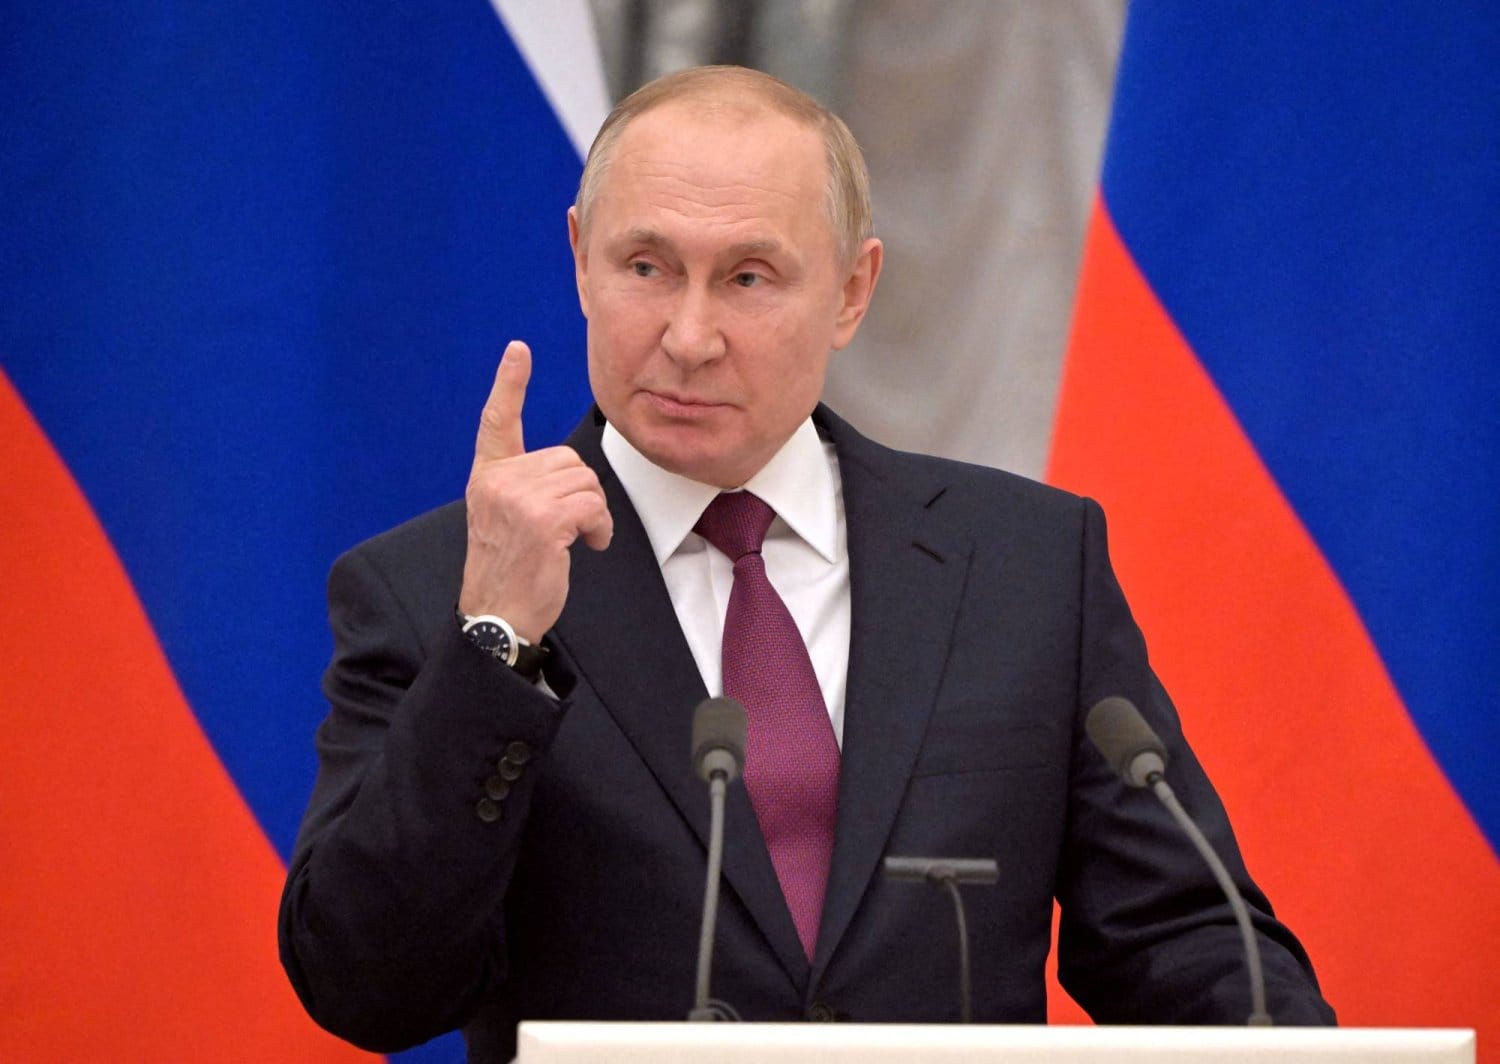 بوتين: نعرف من ارتكب هجوم موسكو لكن نريد معرفة من أمر به